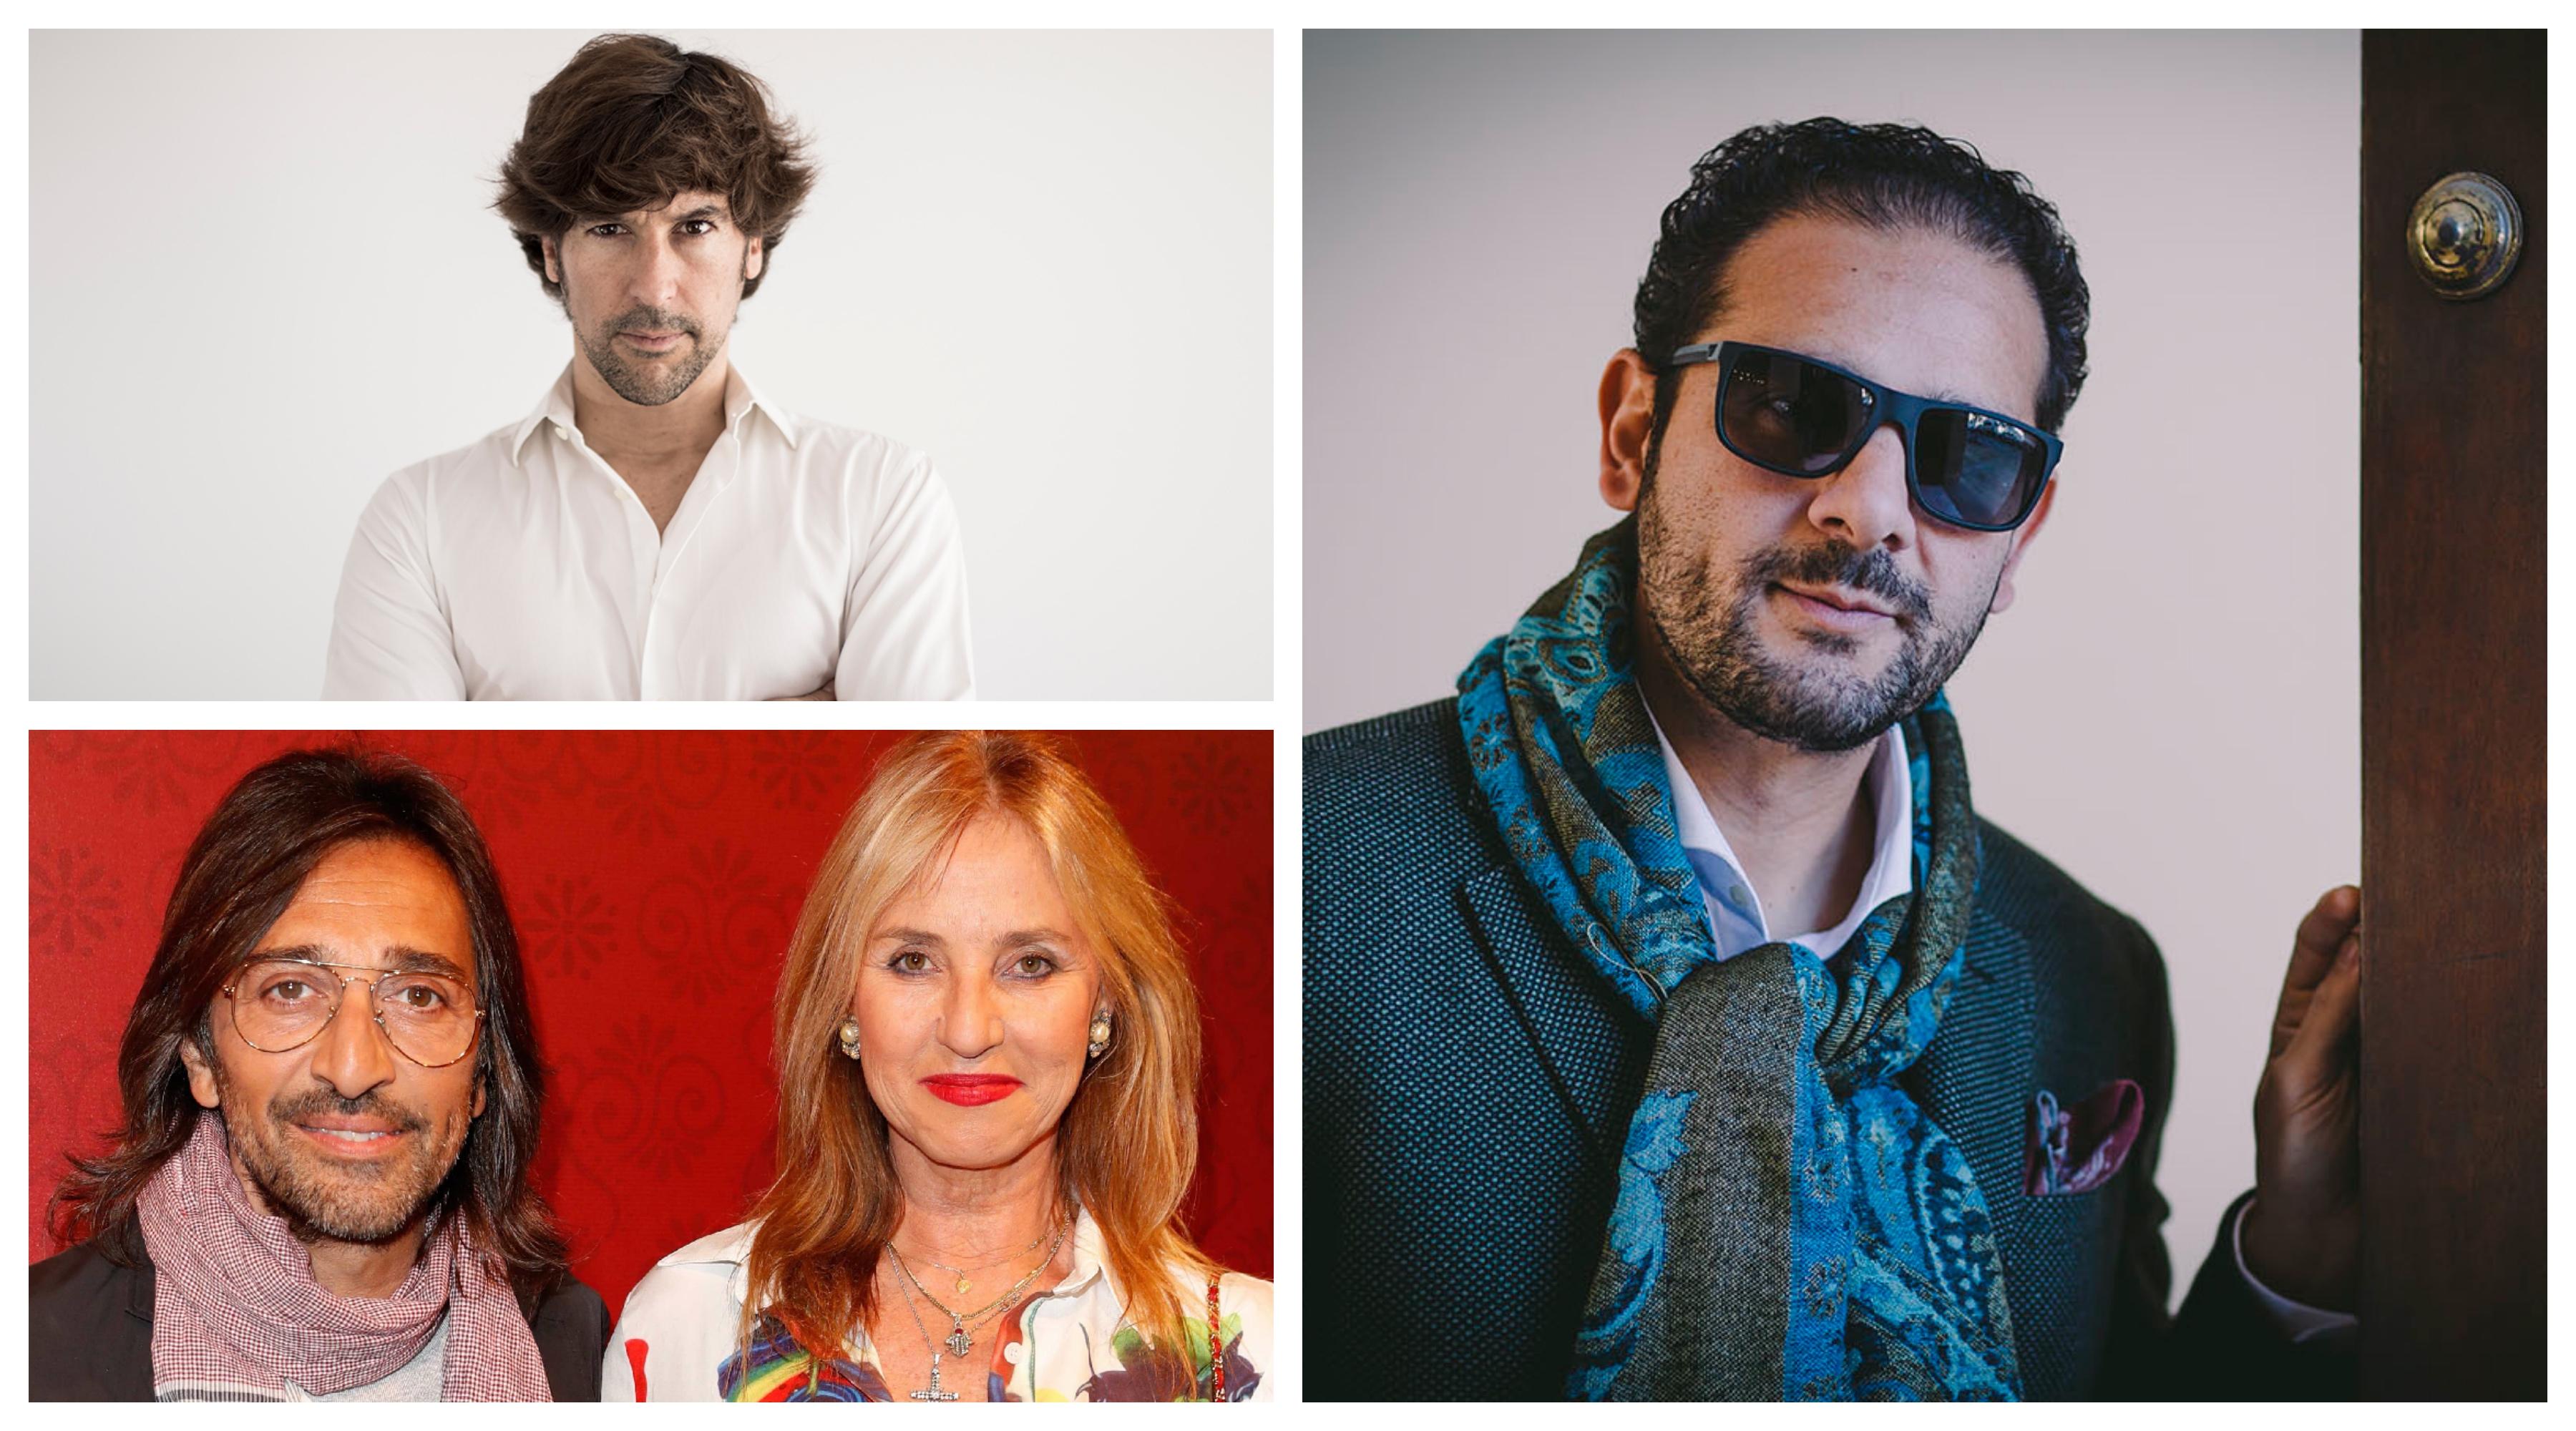 Las caras conocidas que podrás ver en la Pasarela Flamenca Jerez Tío Pepe 2020